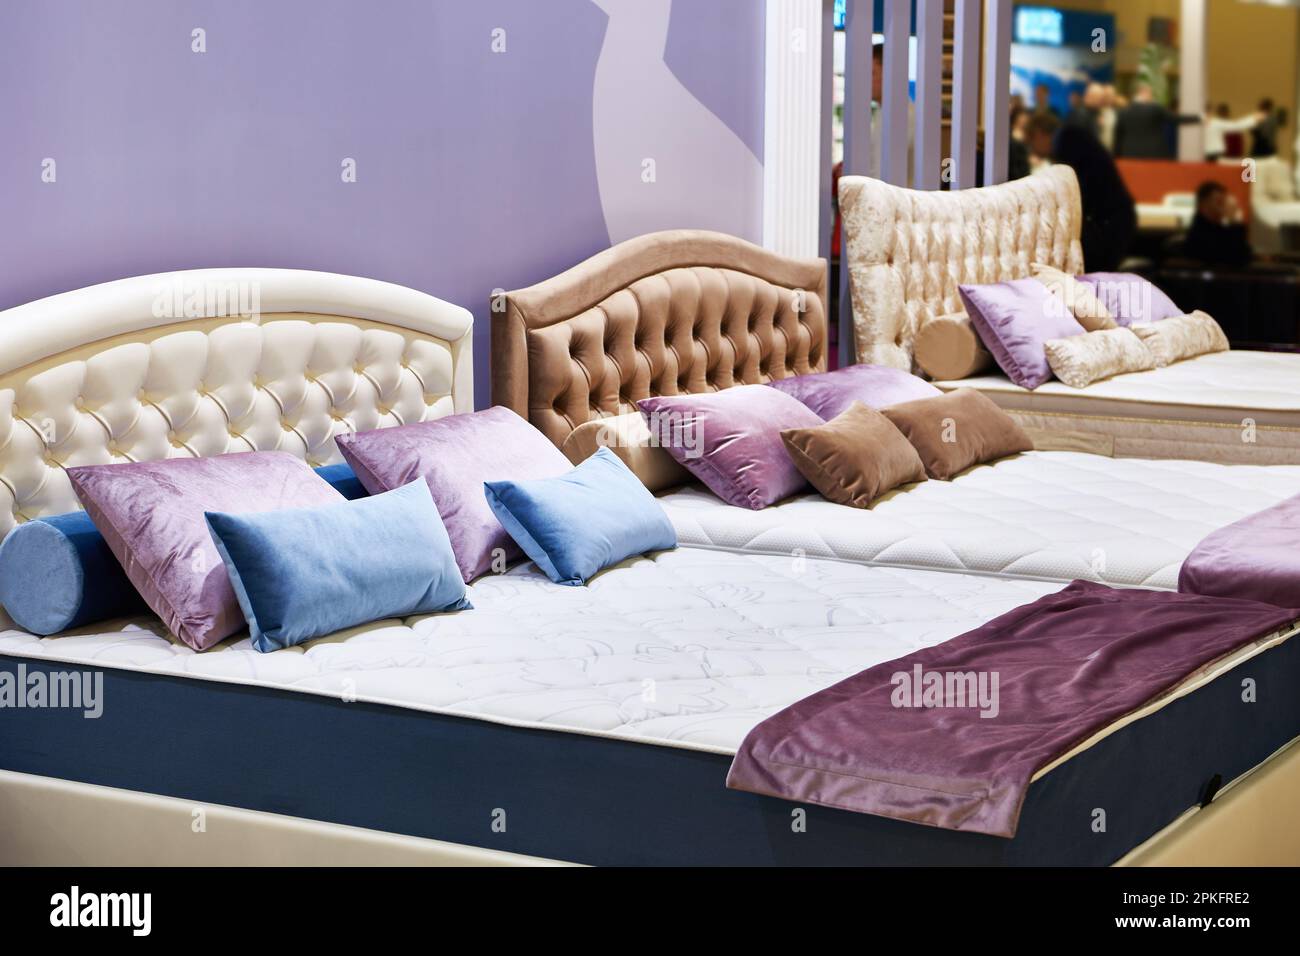 Schöne Betten Möbel im Geschäft Stockfoto